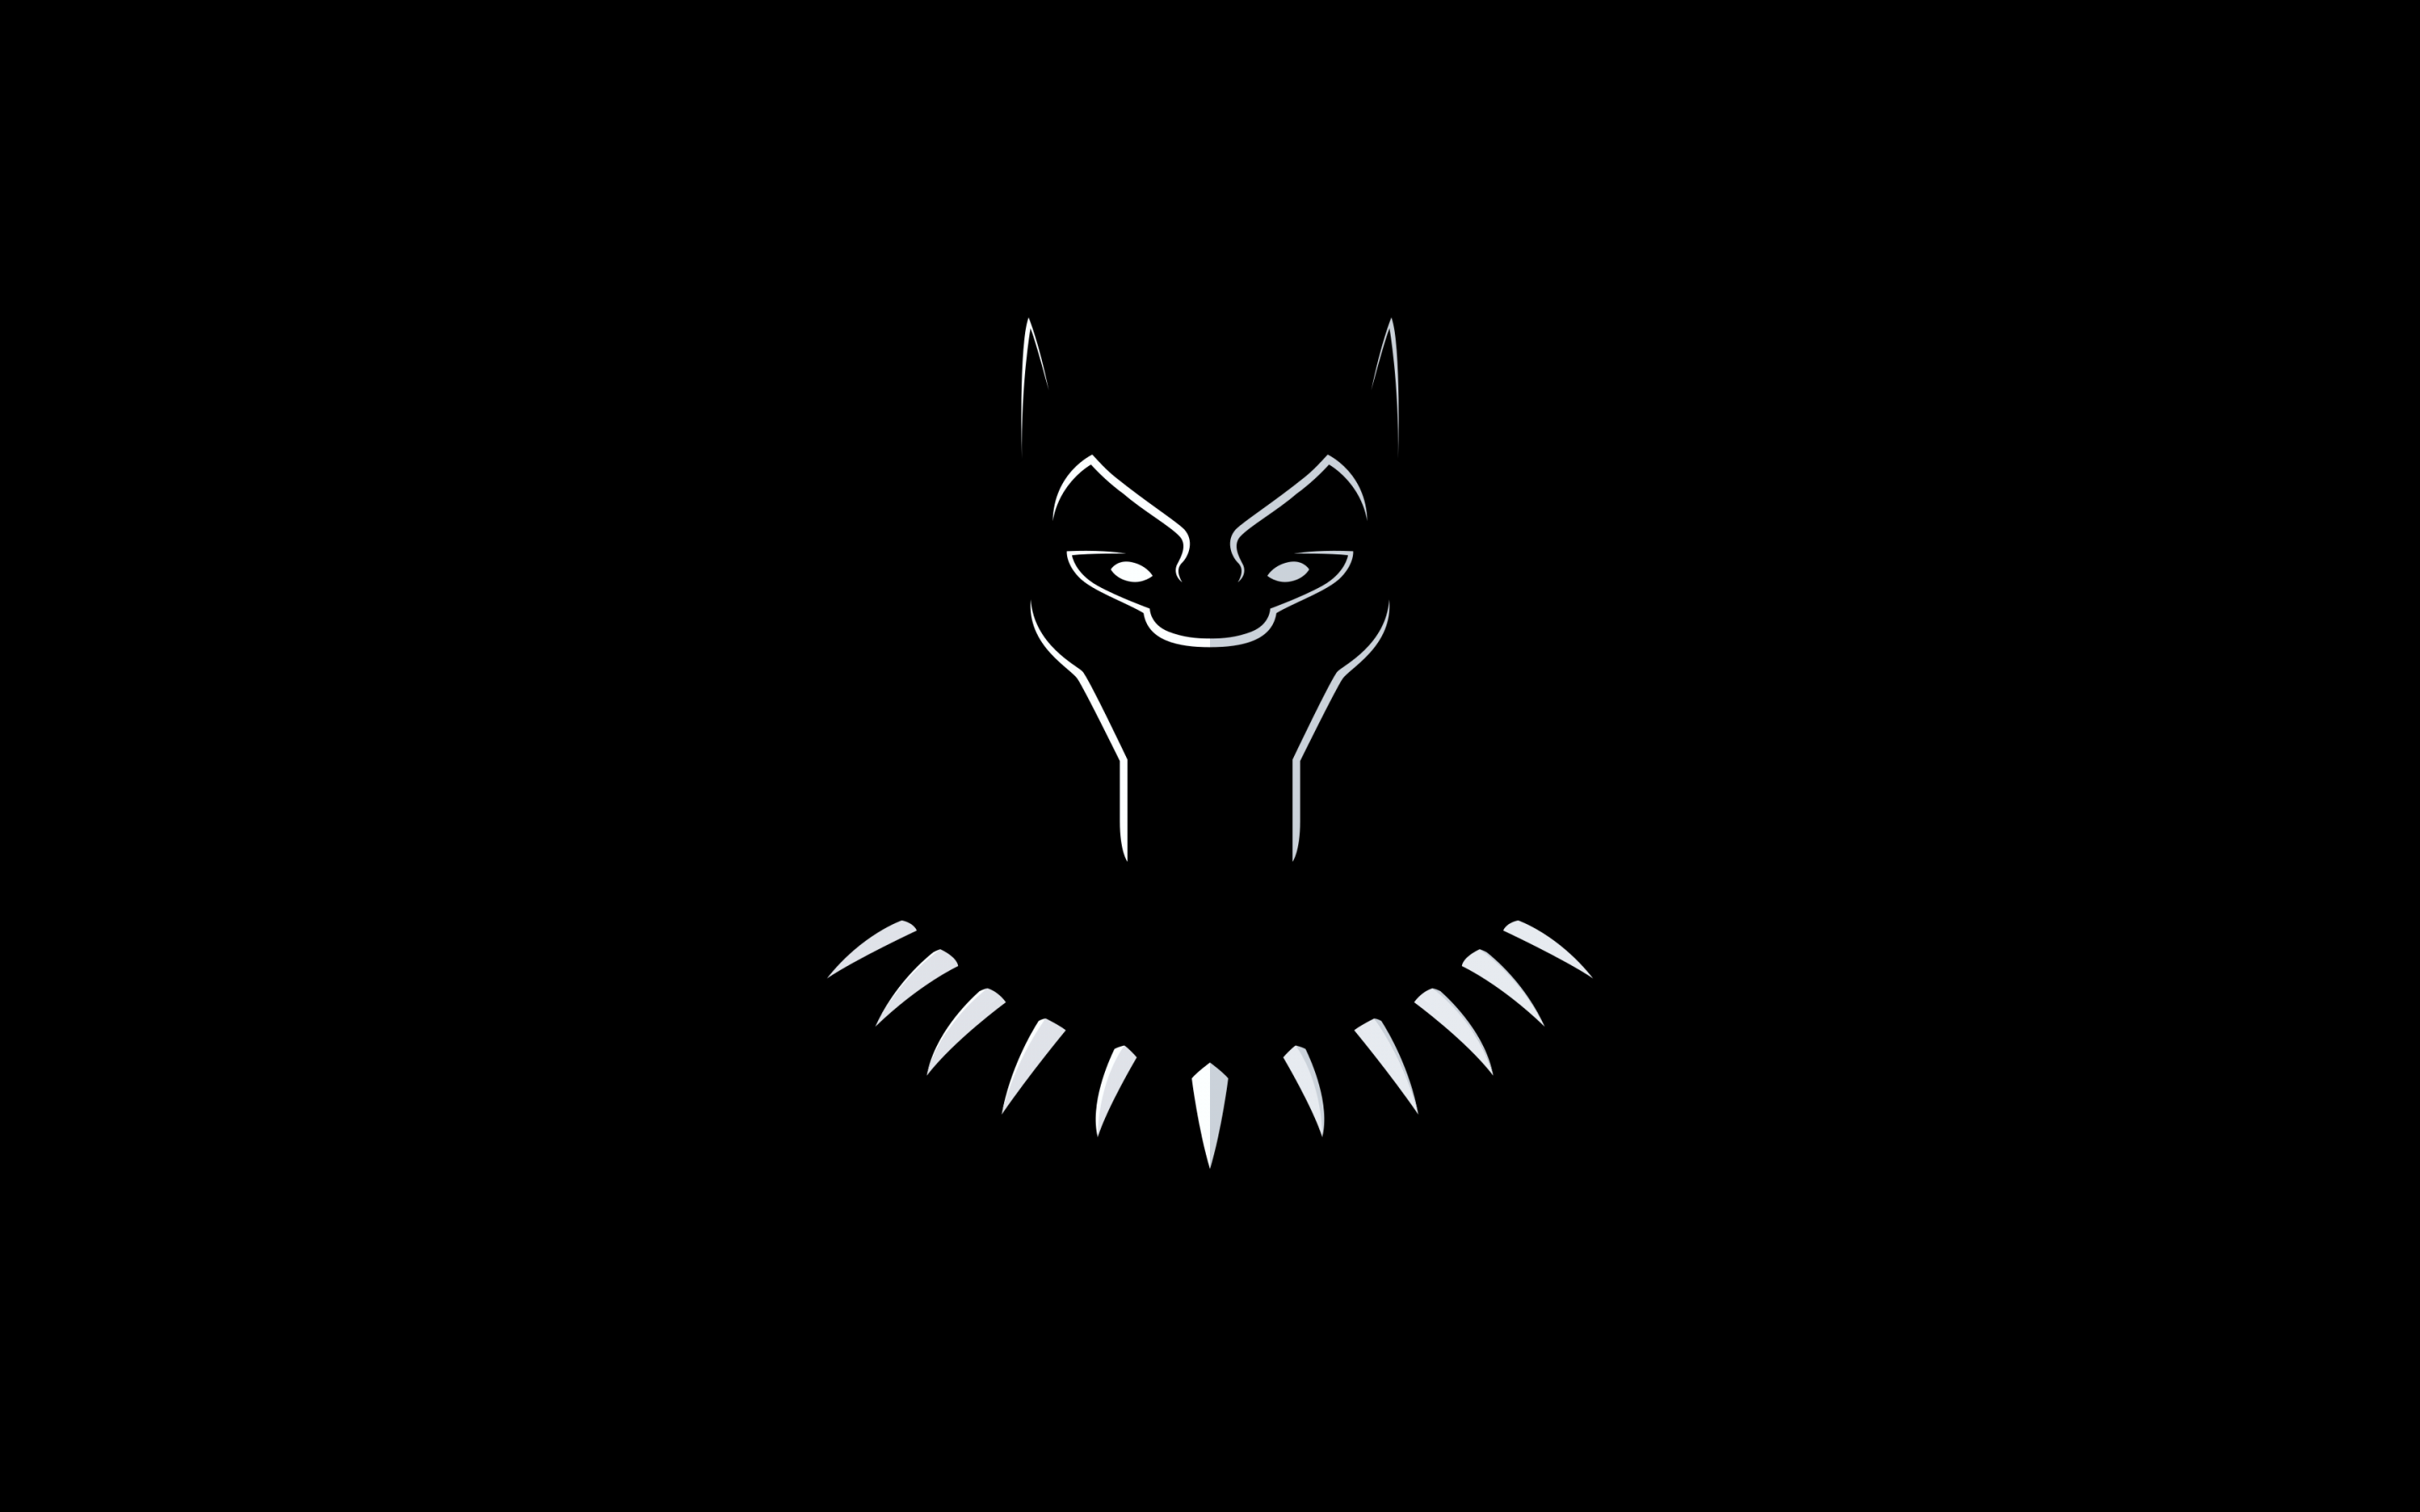 Hình nền Siêu nhân đen 4K (Black Panther Wallpaper 4K): Cảm nhận sự mạnh mẽ và phong độ của Siêu nhân đen với những hình nền độ phân giải 4K chất lượng cao. Tấm hình hiển thị thần thái của vị vua sẽ khiến bạn muốn sở hữu ngay và luôn.